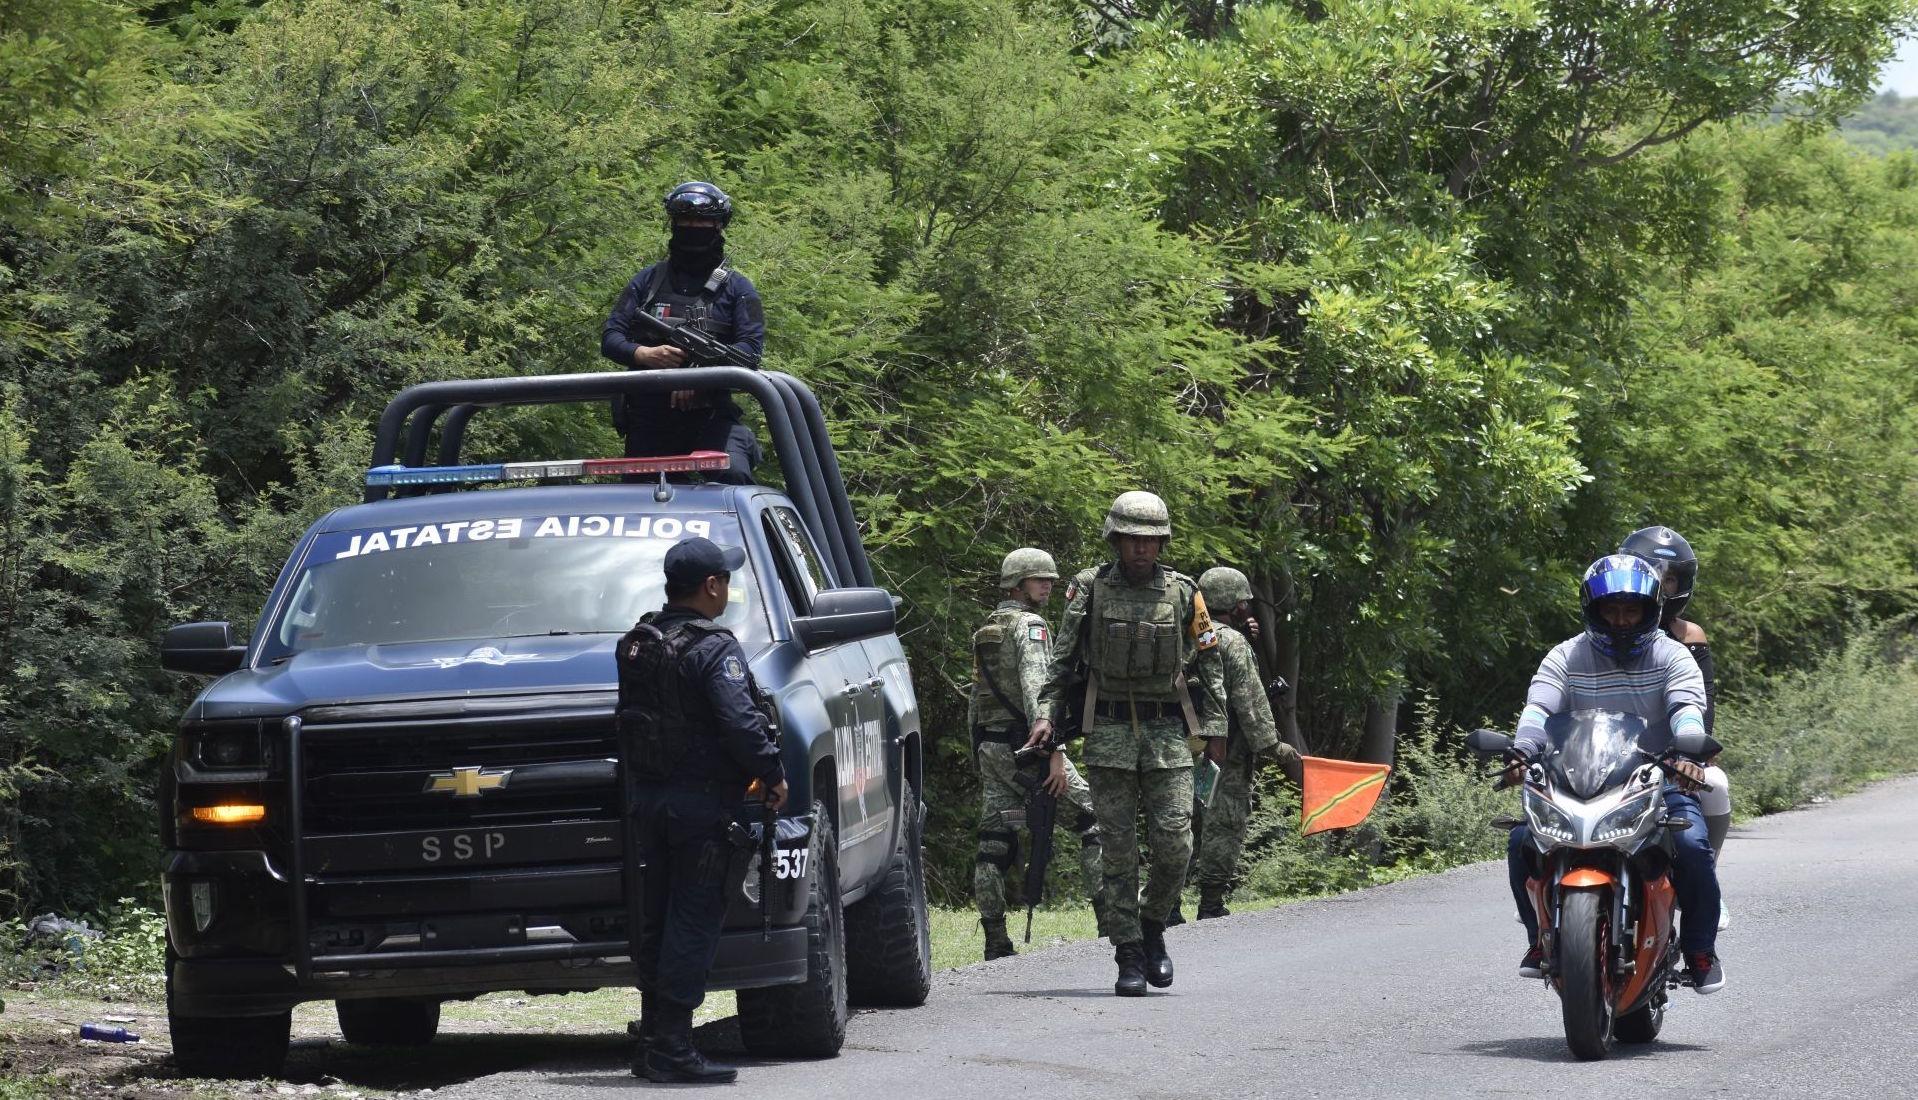 Matan a seis en una fiesta familiar en Tetipac, Guerrero; hay dos lesionados